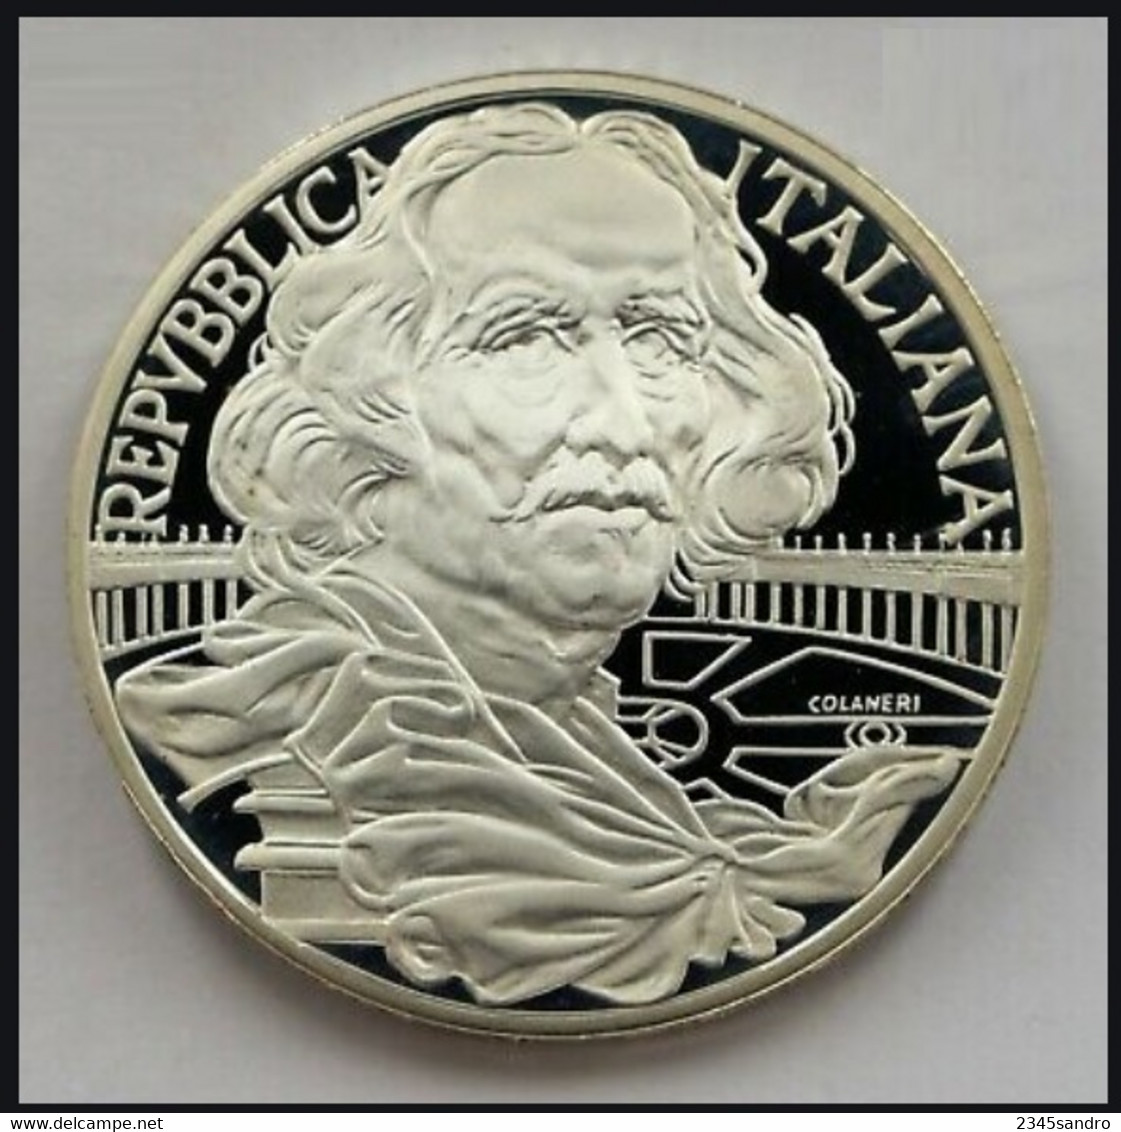 1000 LIRE 1998 "BERNINI" COMMEMORATIVA ARGENTO FDC, Uncirculated, Stempelglanz, Fleur De Coin REPUBBLICA ITALIANA - 1 000 Lire